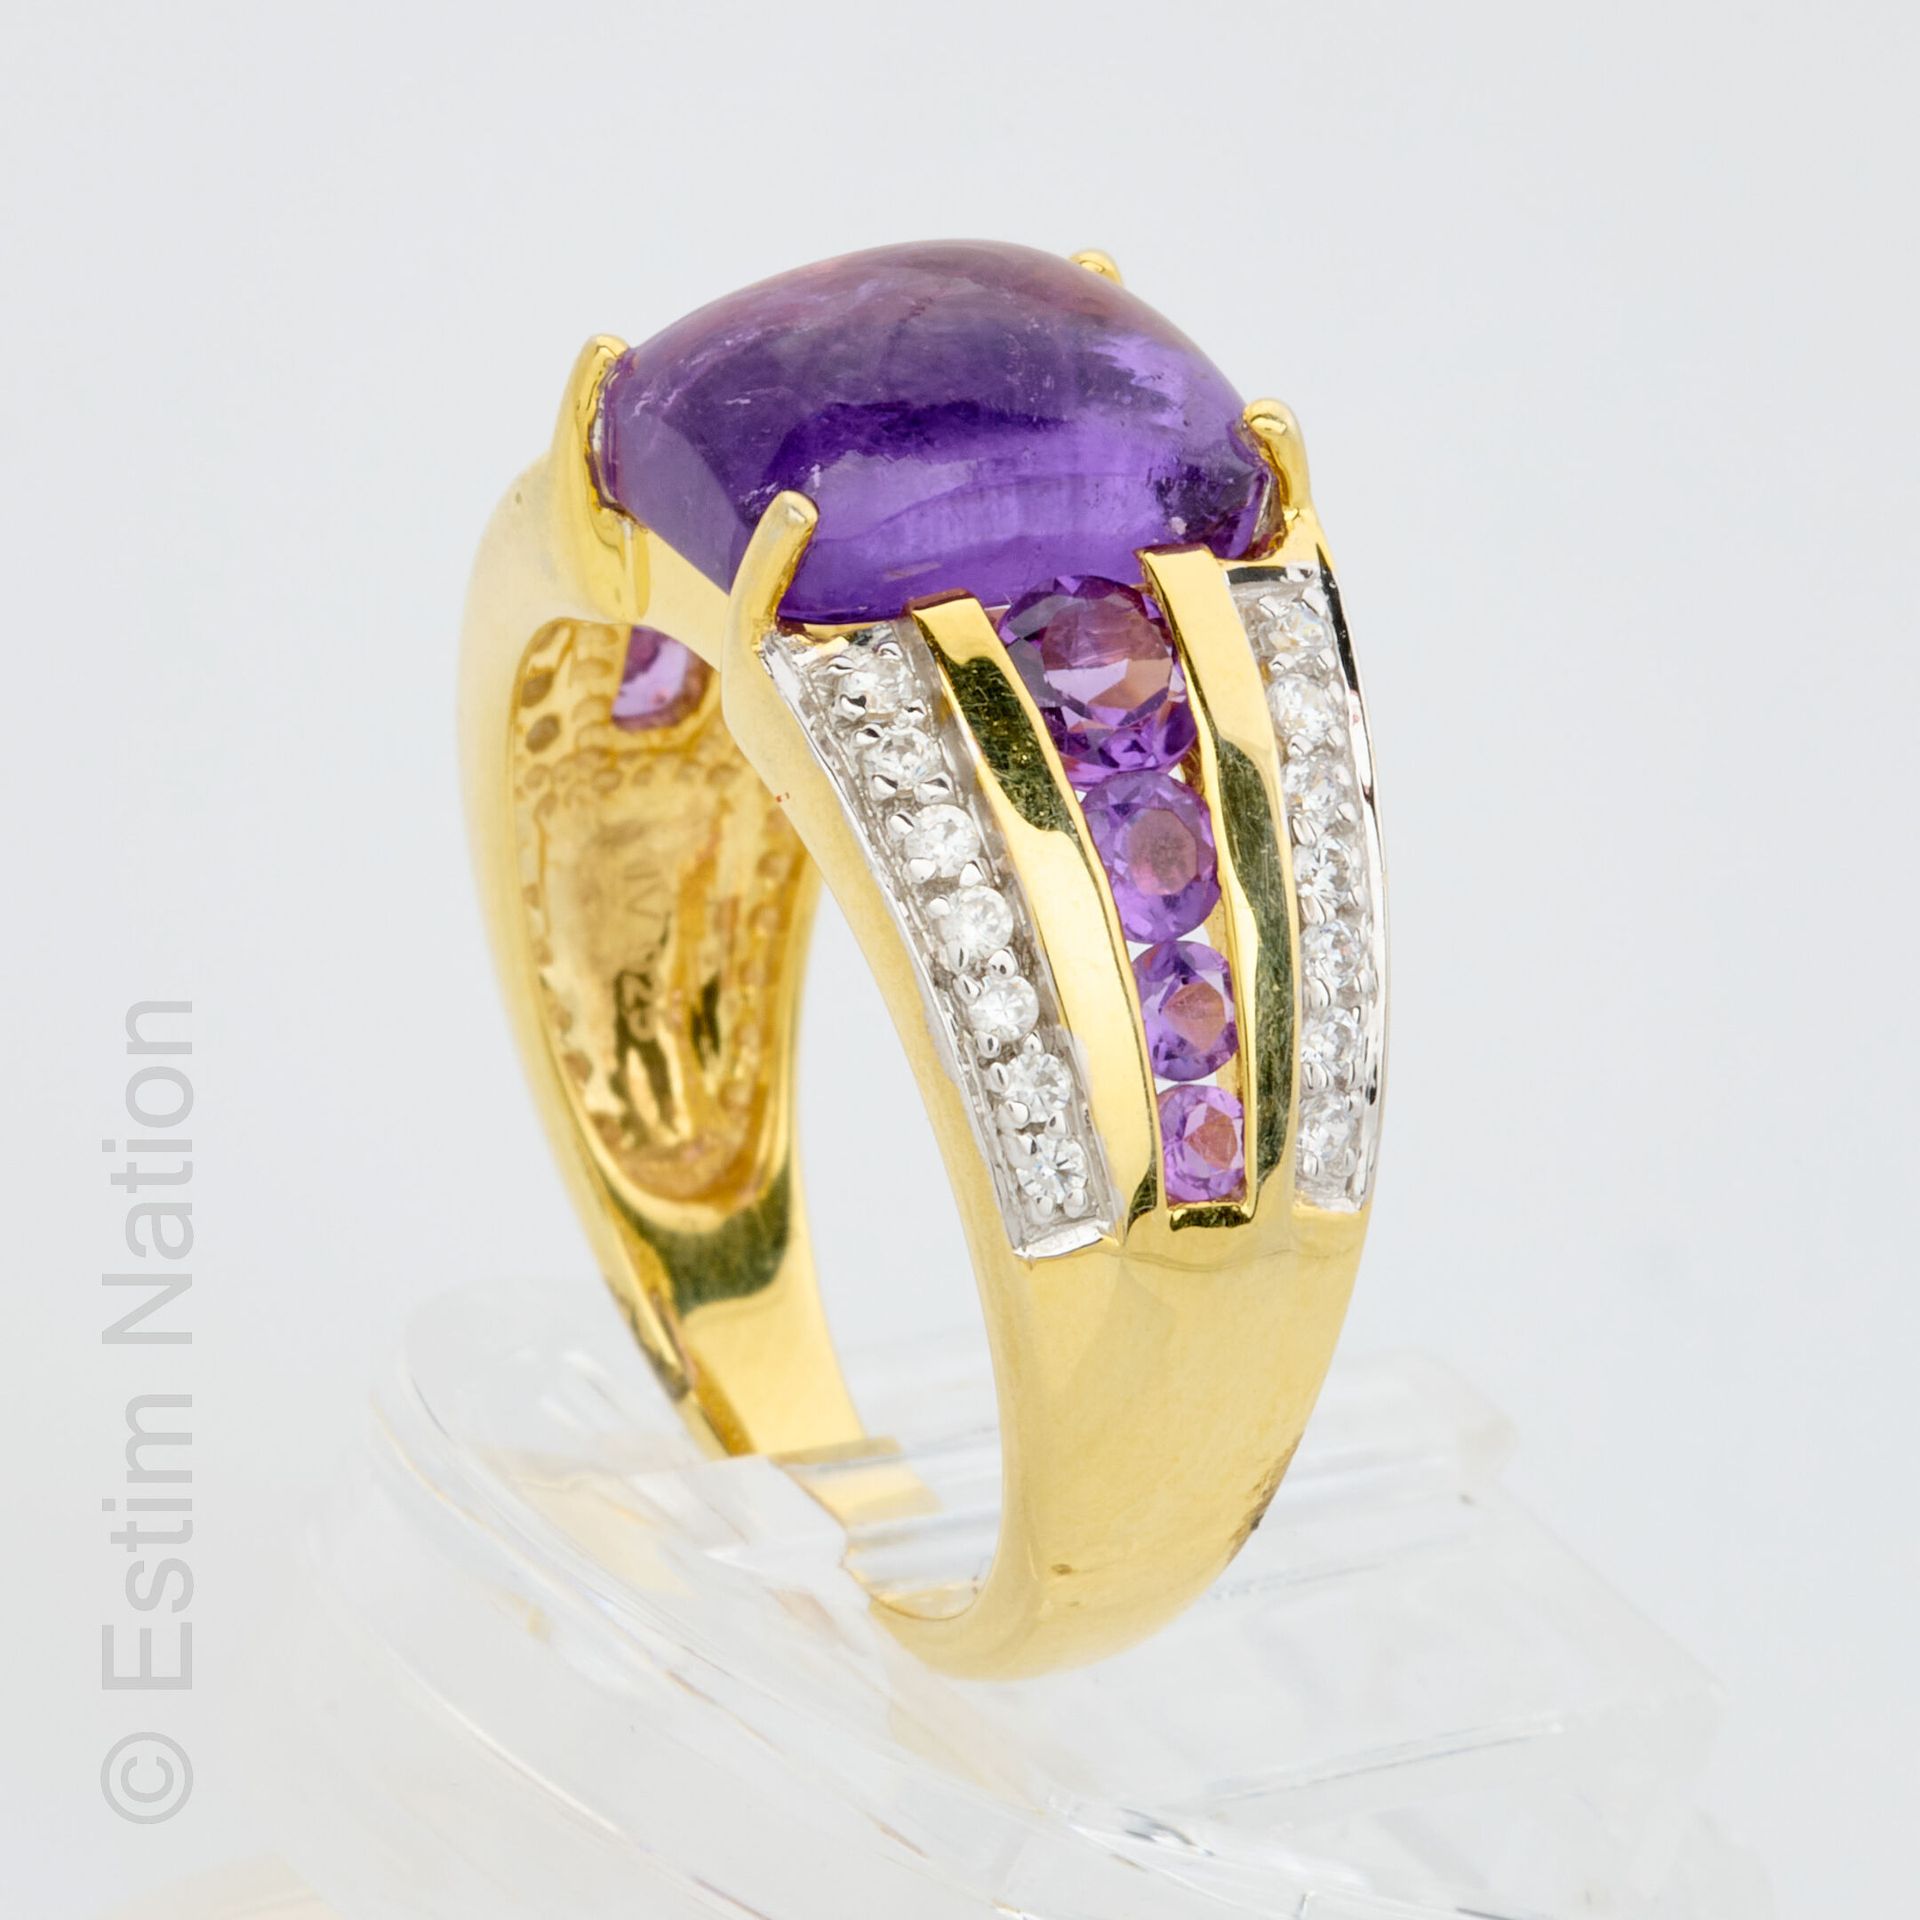 BAGUE AMETHYSTE 一枚925金戒指，上面有一个长方形的凸圆形紫水晶，中间有小圆紫水晶和锆石。 
毛重：5.27克 
手指尺寸：57